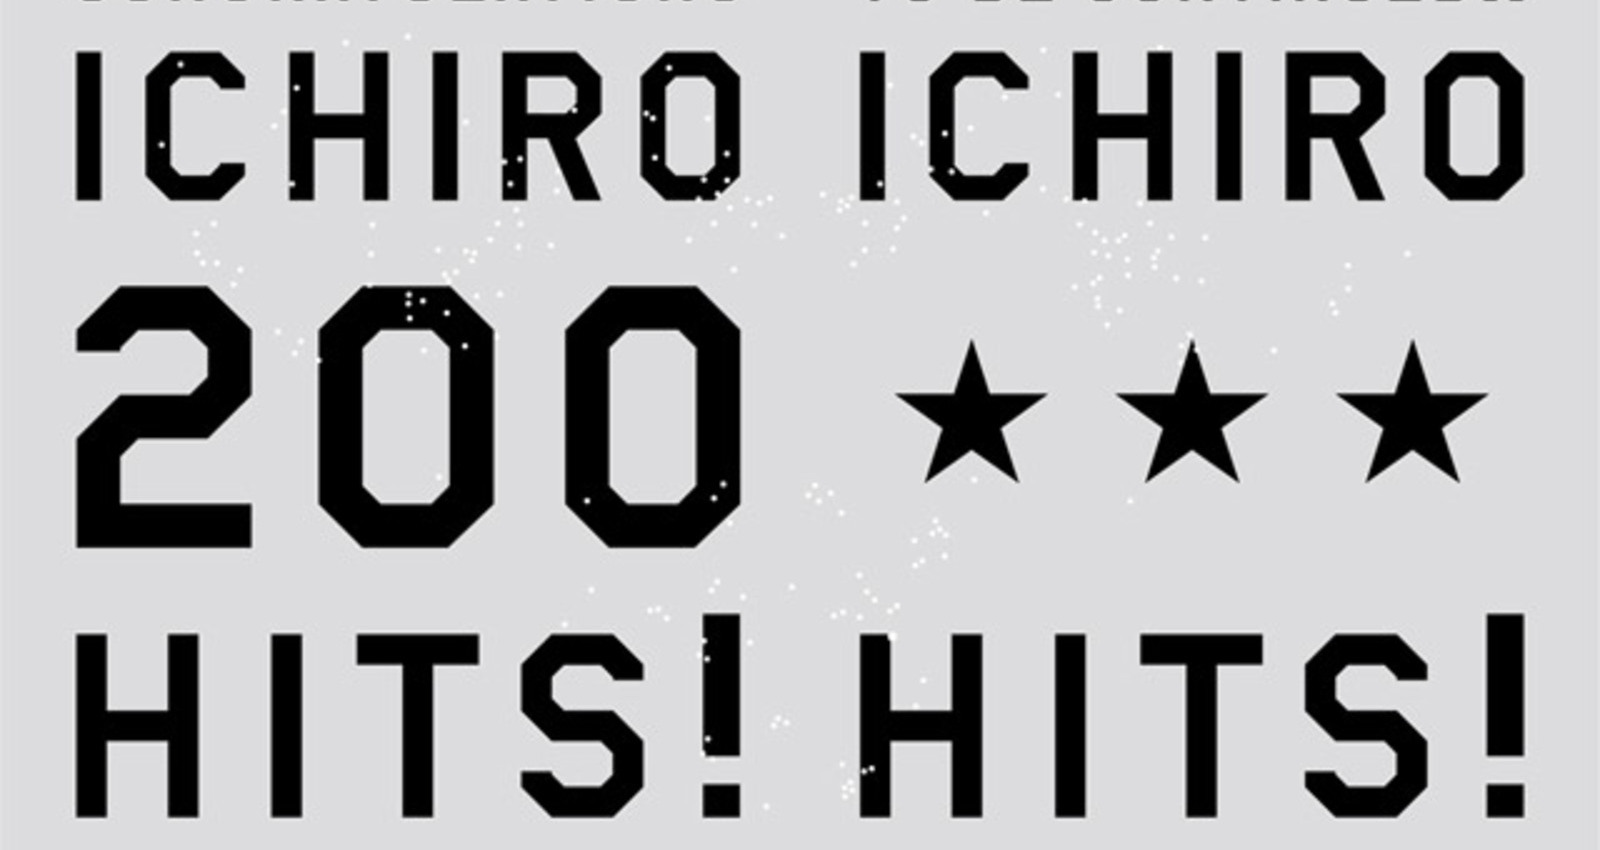 Congratulations ICHIRO